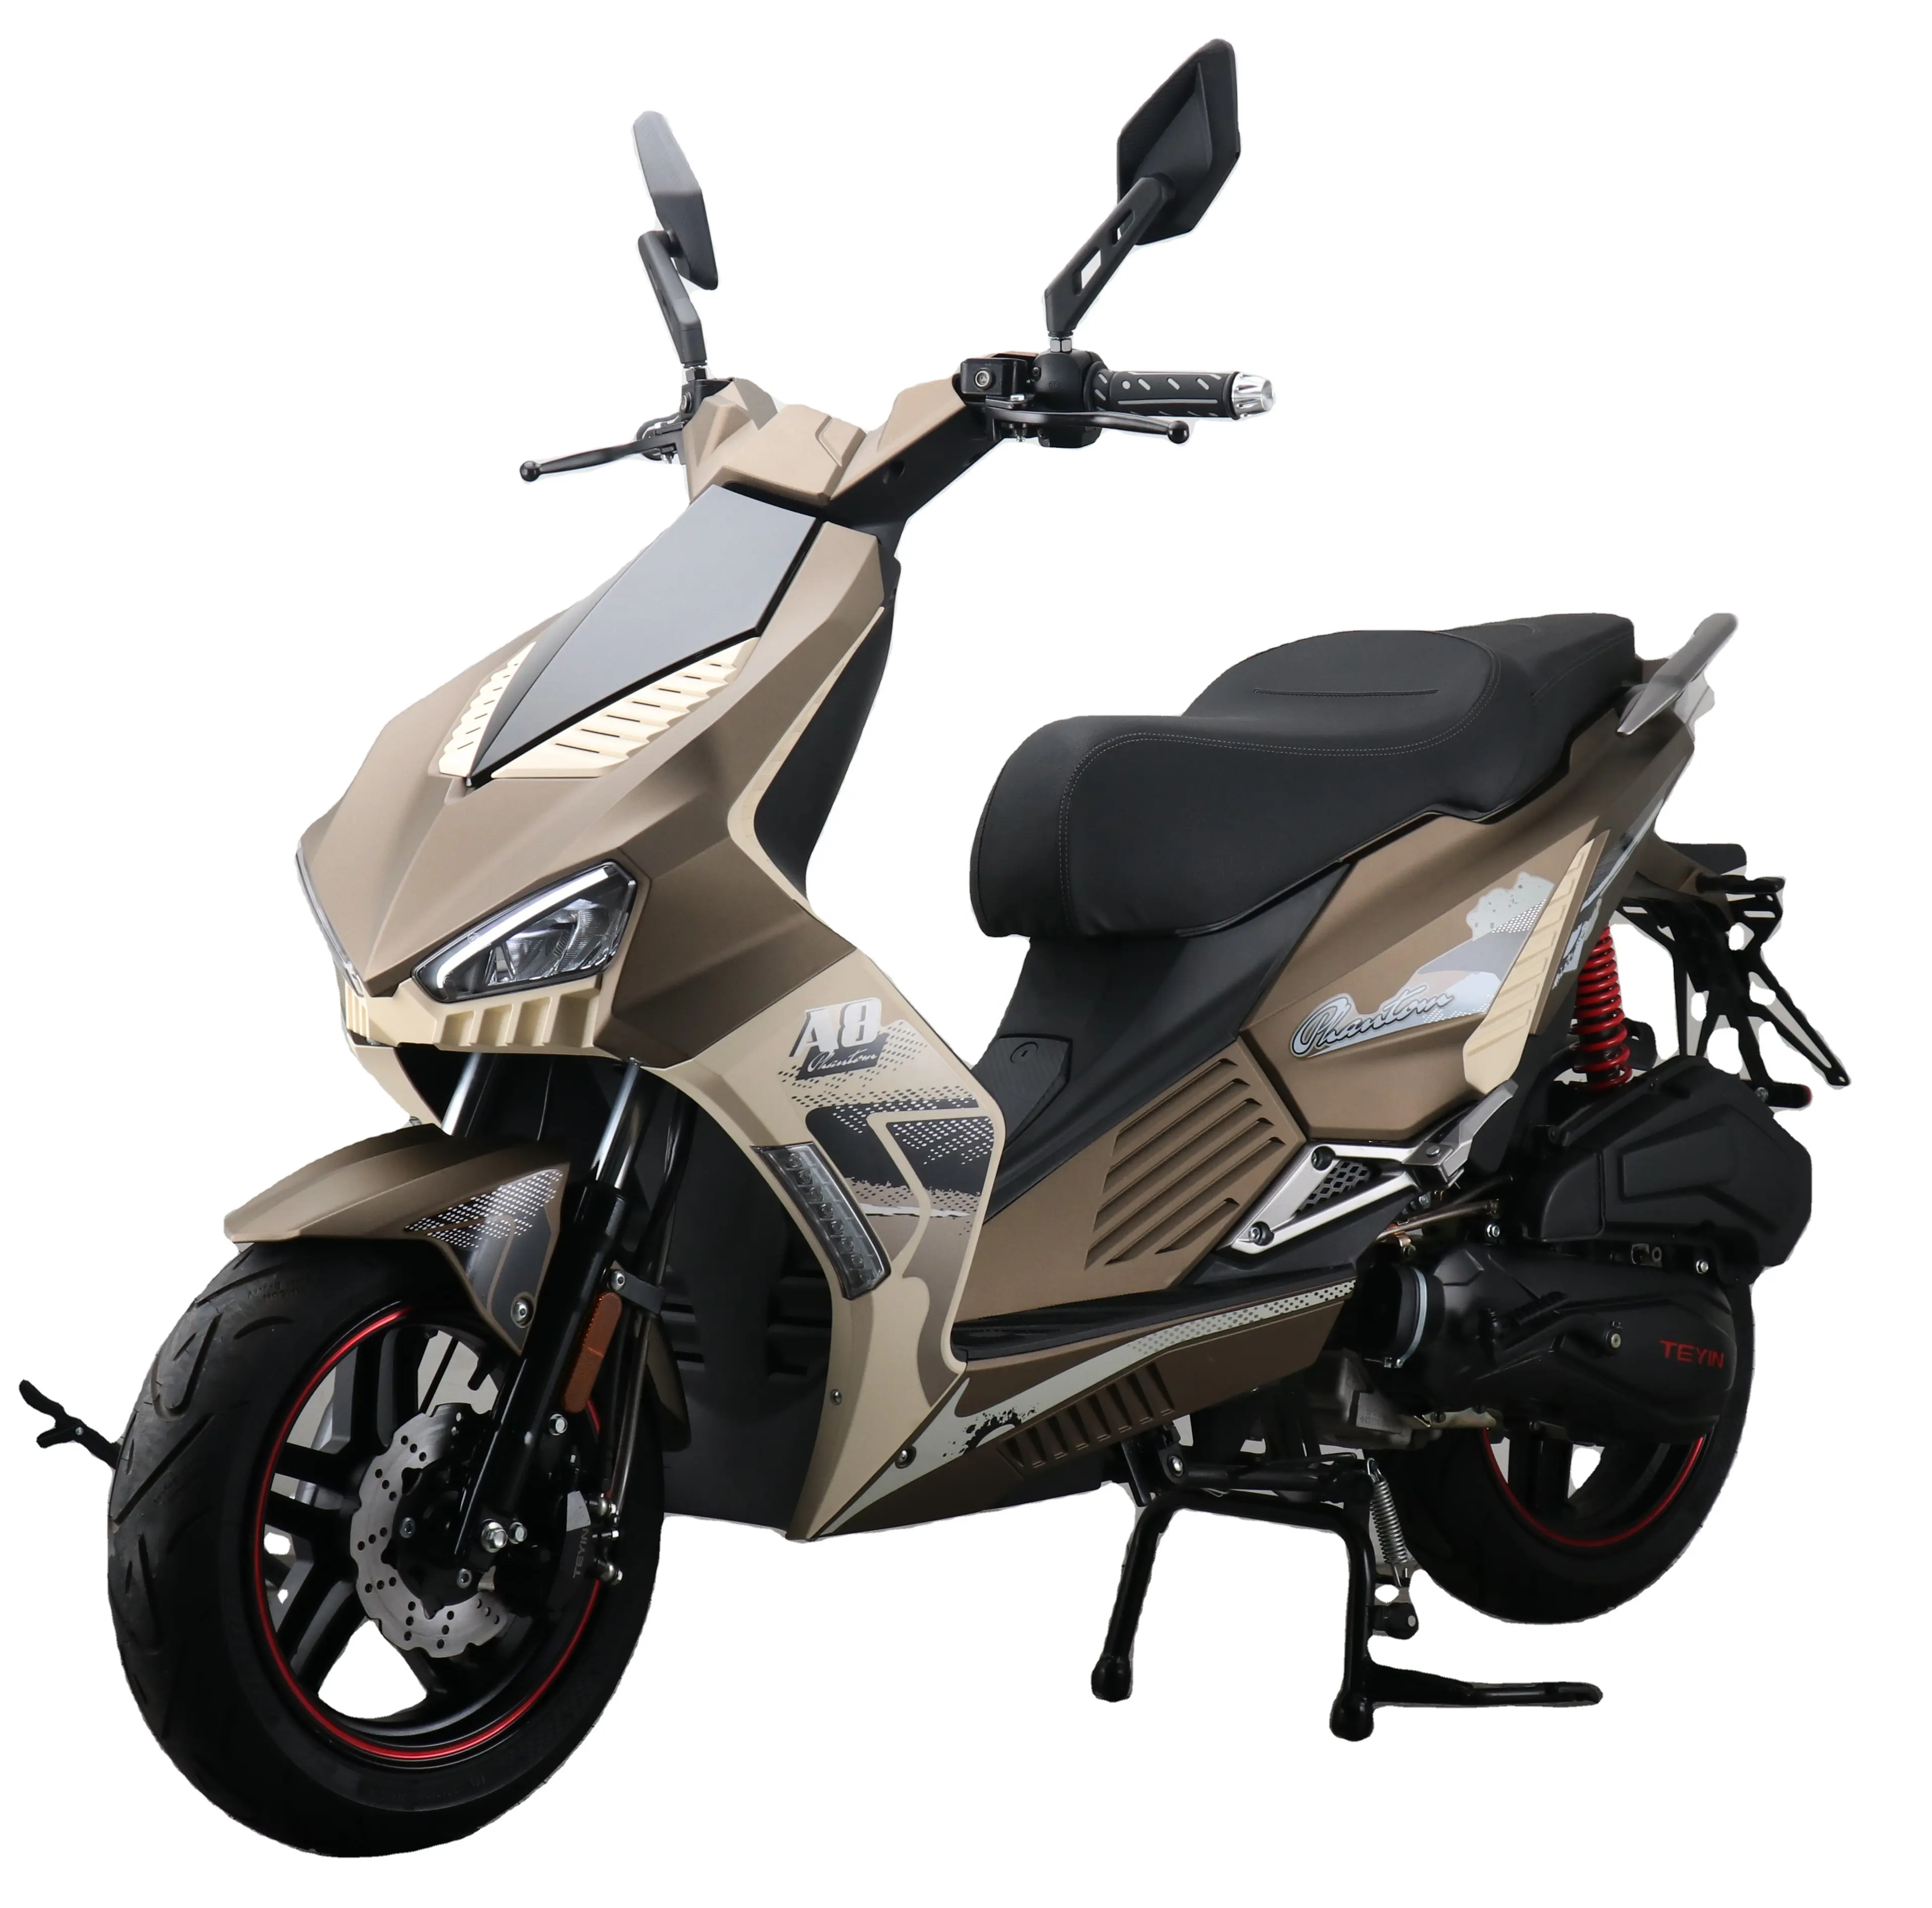 A8/CEE COC EURO 5 50cc 125cc 150cc adulto gás scooter ciclomotor motocicleta gasolina retro Chinês gasolina